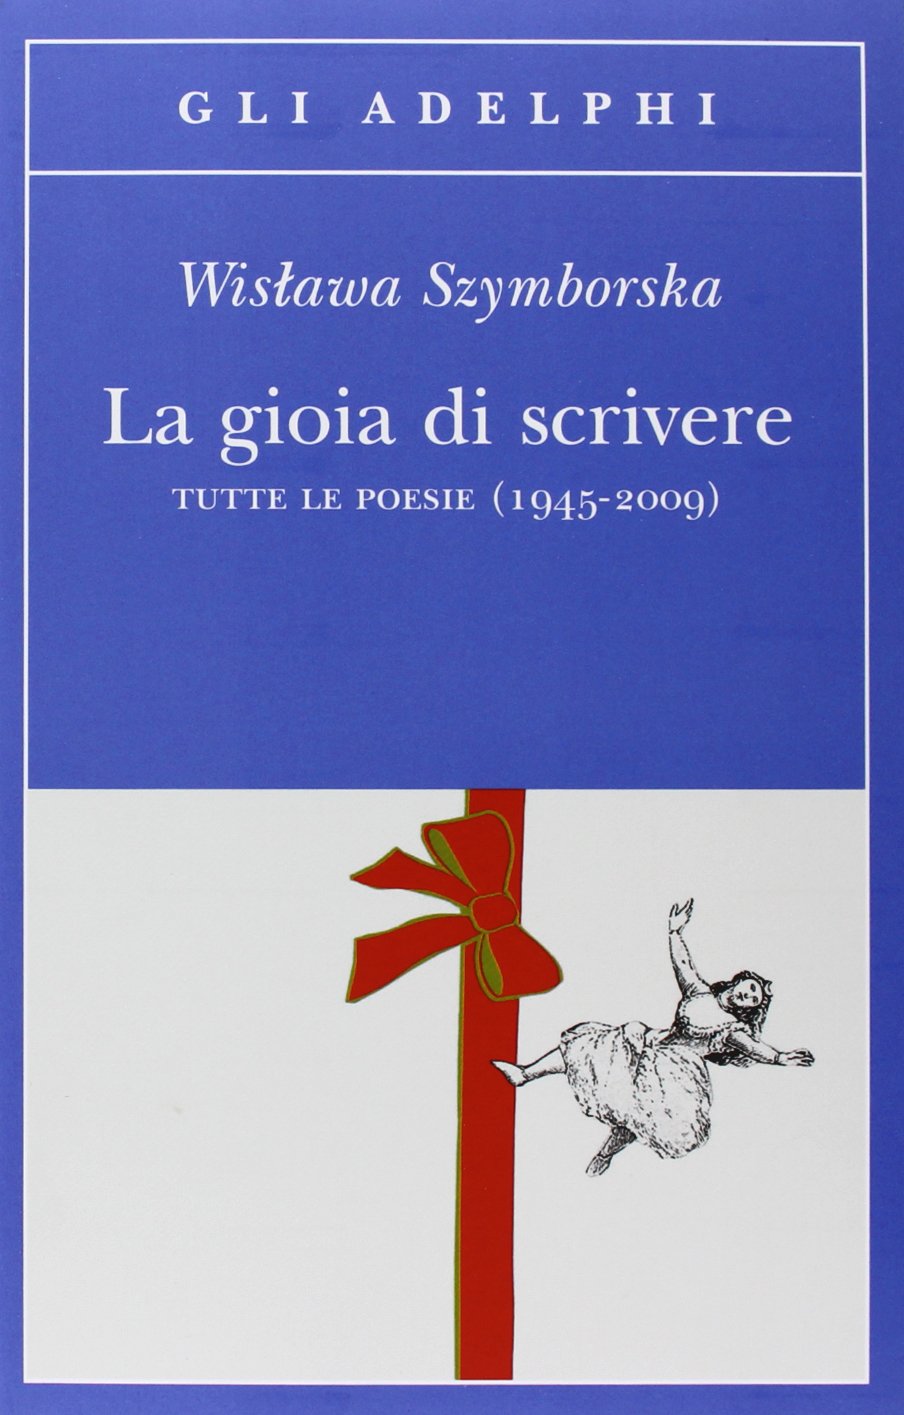 Wislawa Szymborska - un consiglio ben accetto - ilRecensore.it - 